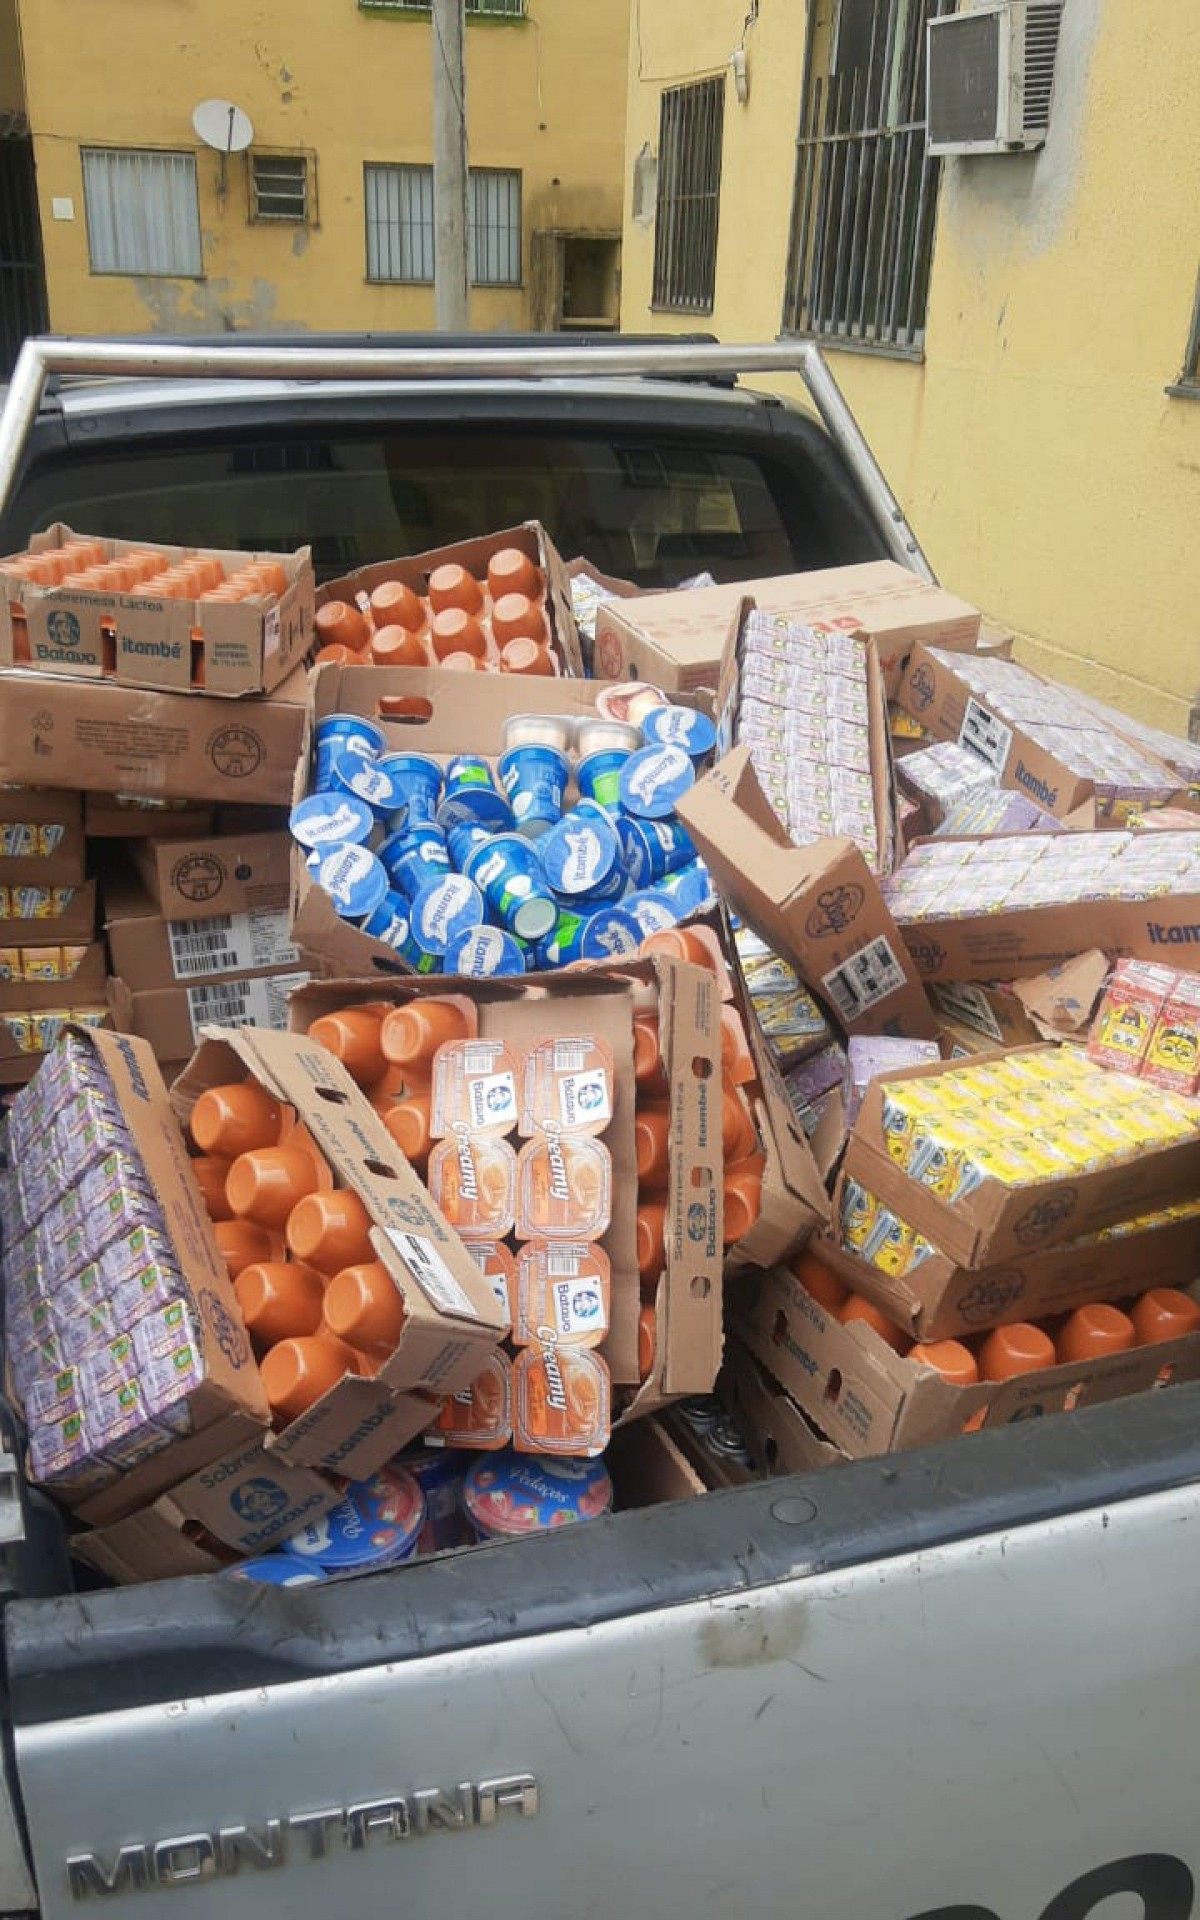 PM recupera carga de iogurte roubada em dois veículos em Barros Filho - Divulgação